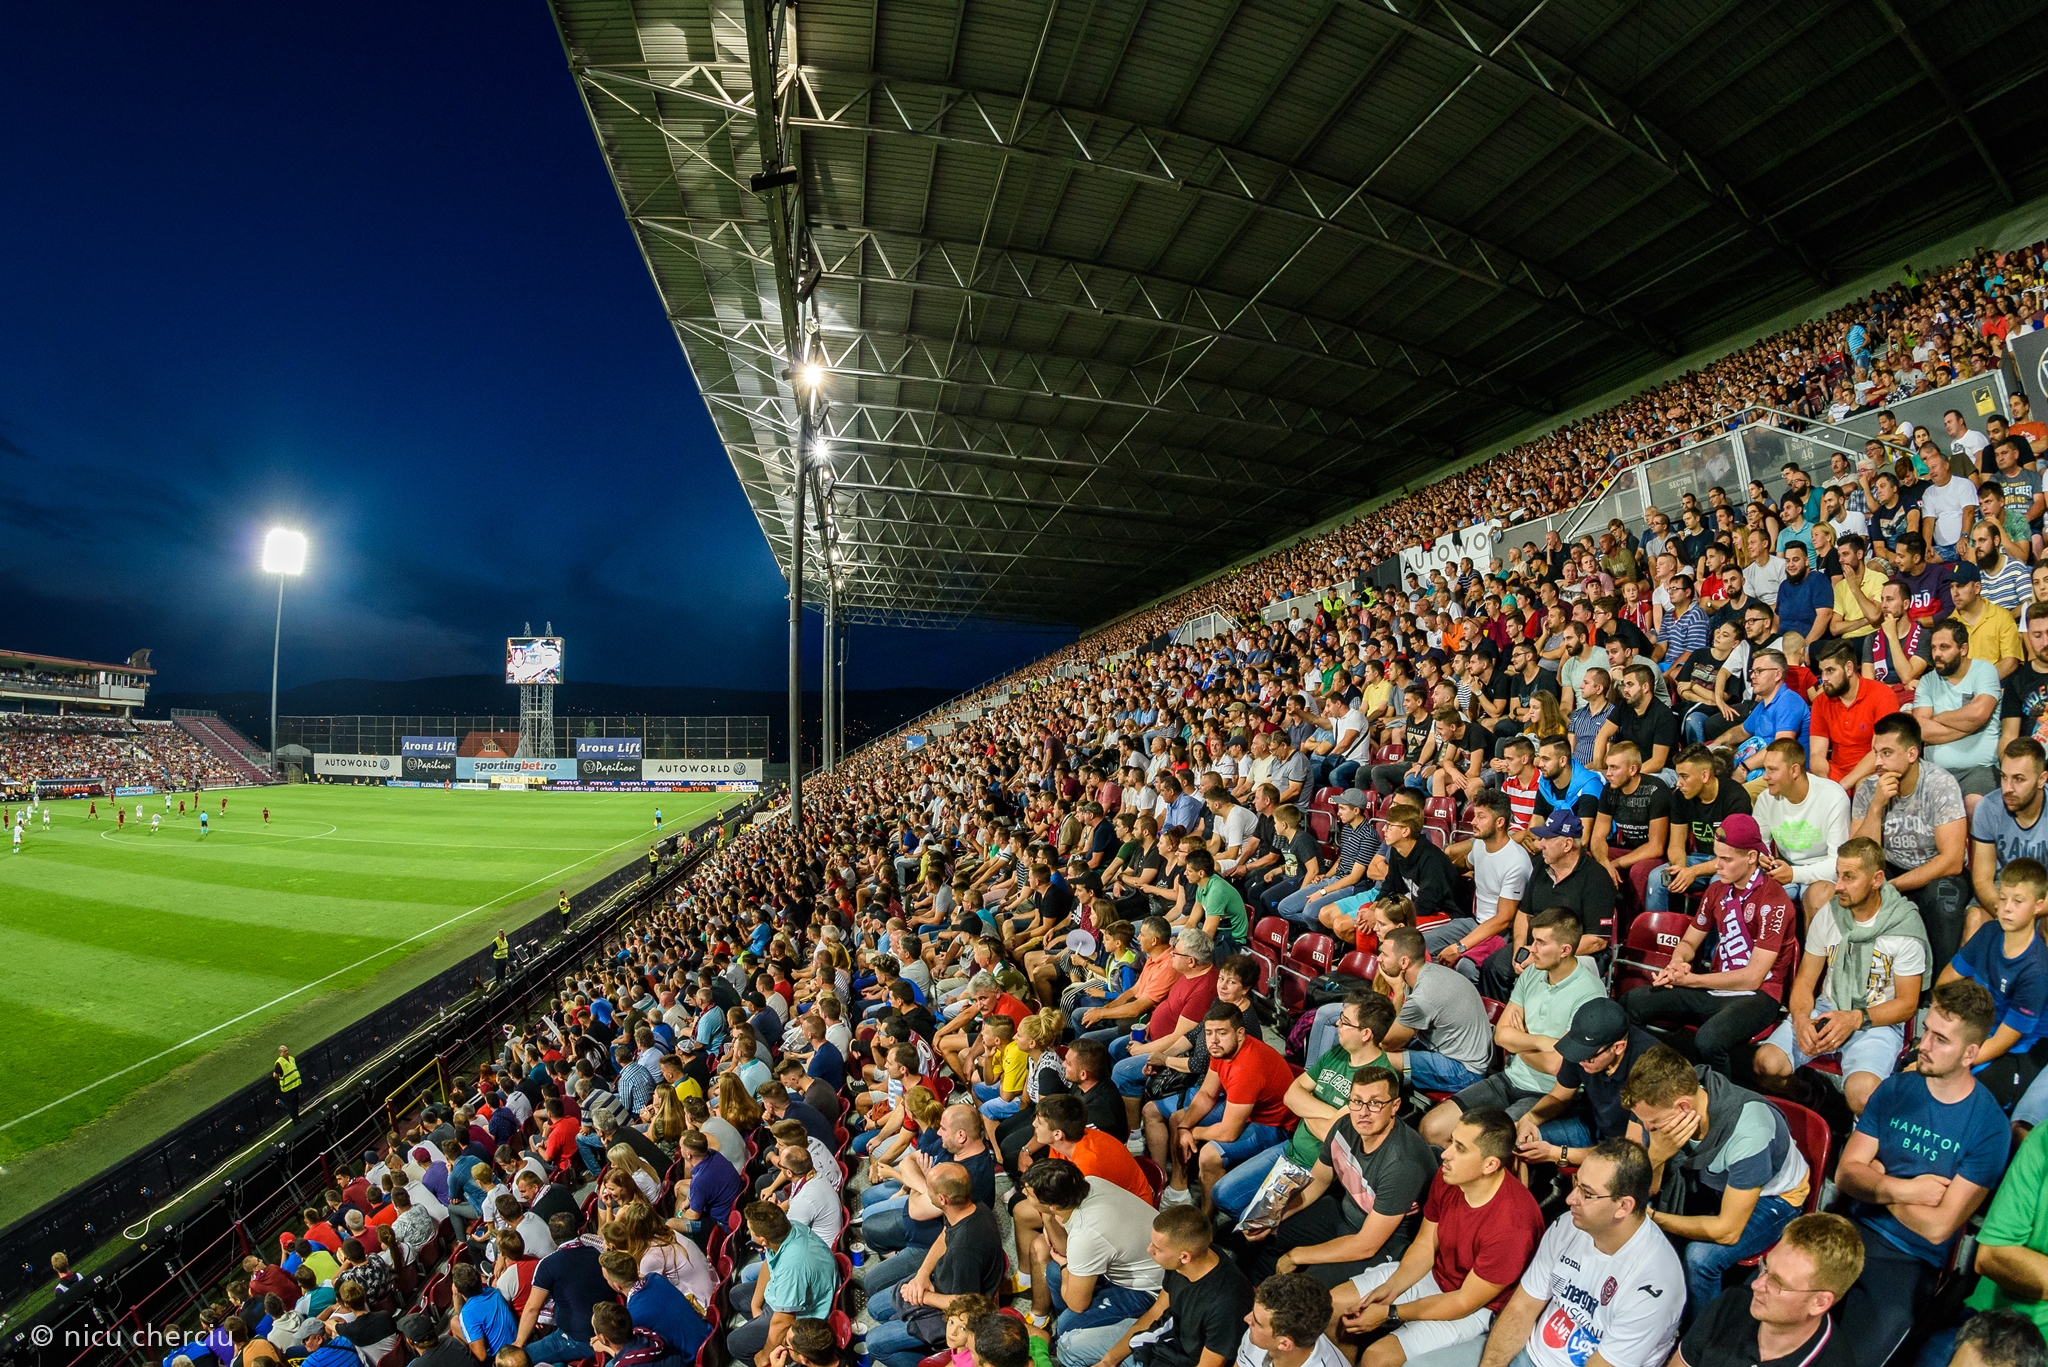 Stadion – FC HERMANNSTADT